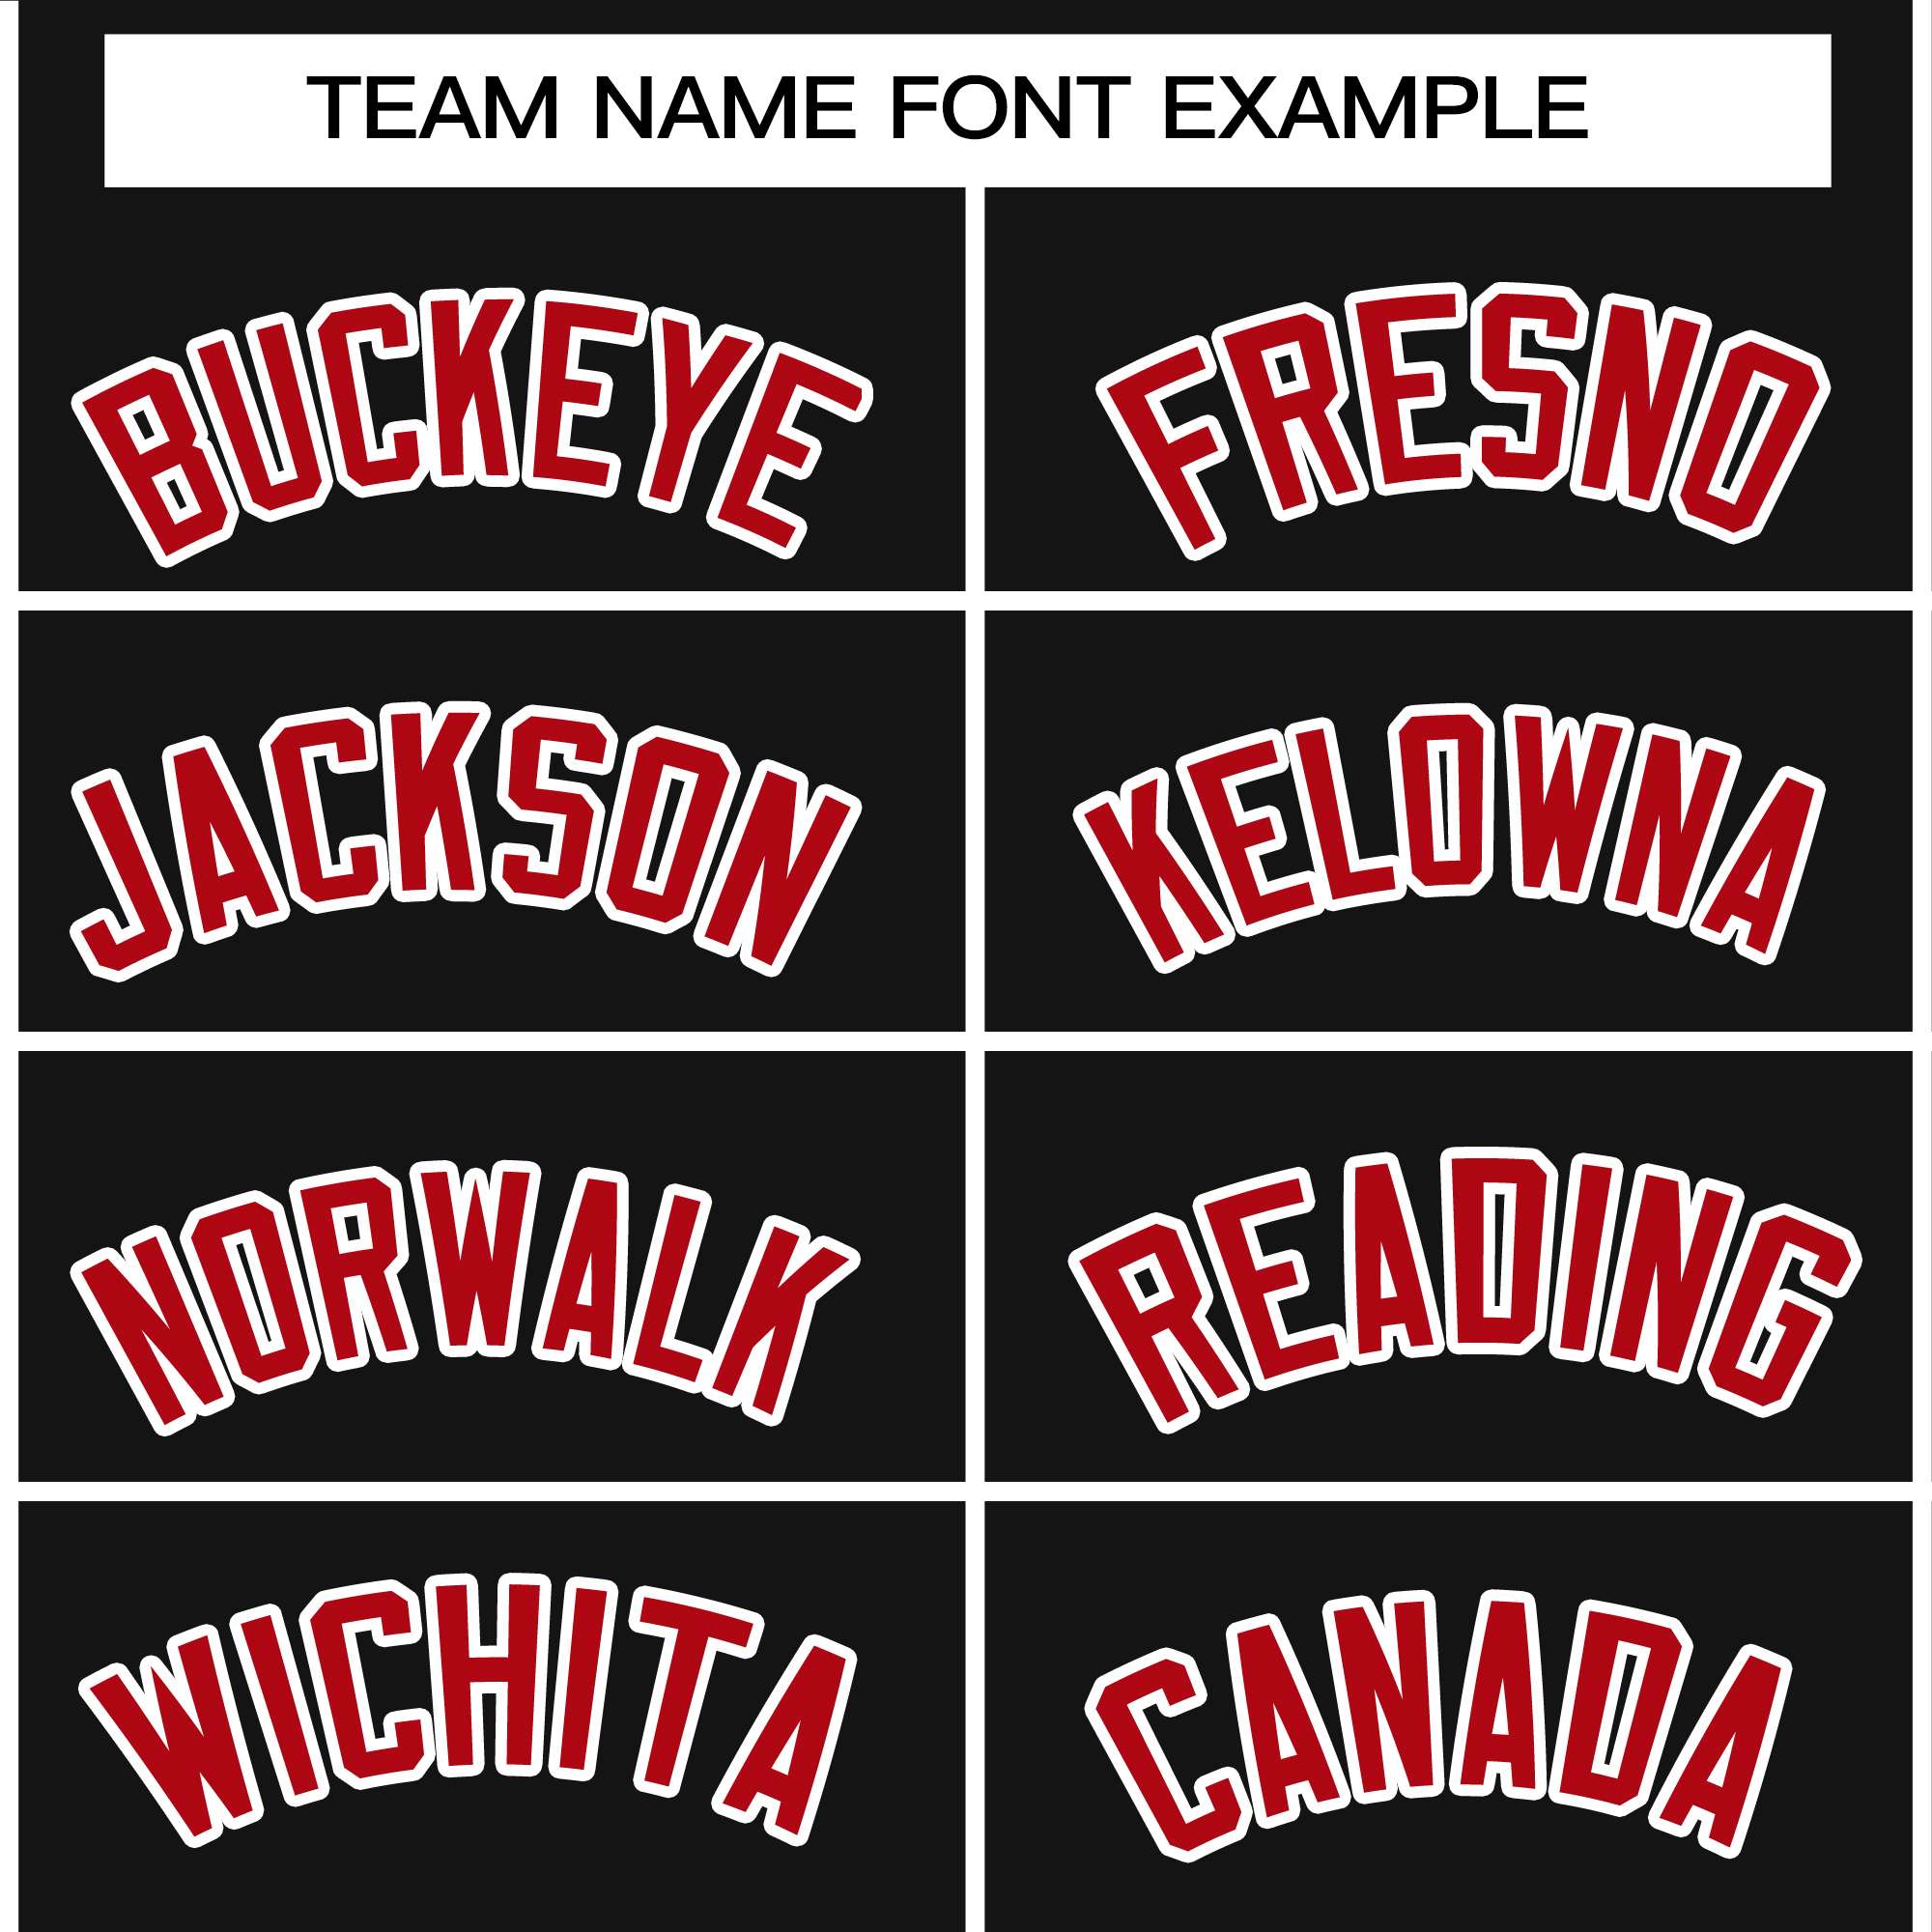 custom thermal hoodie team name font example